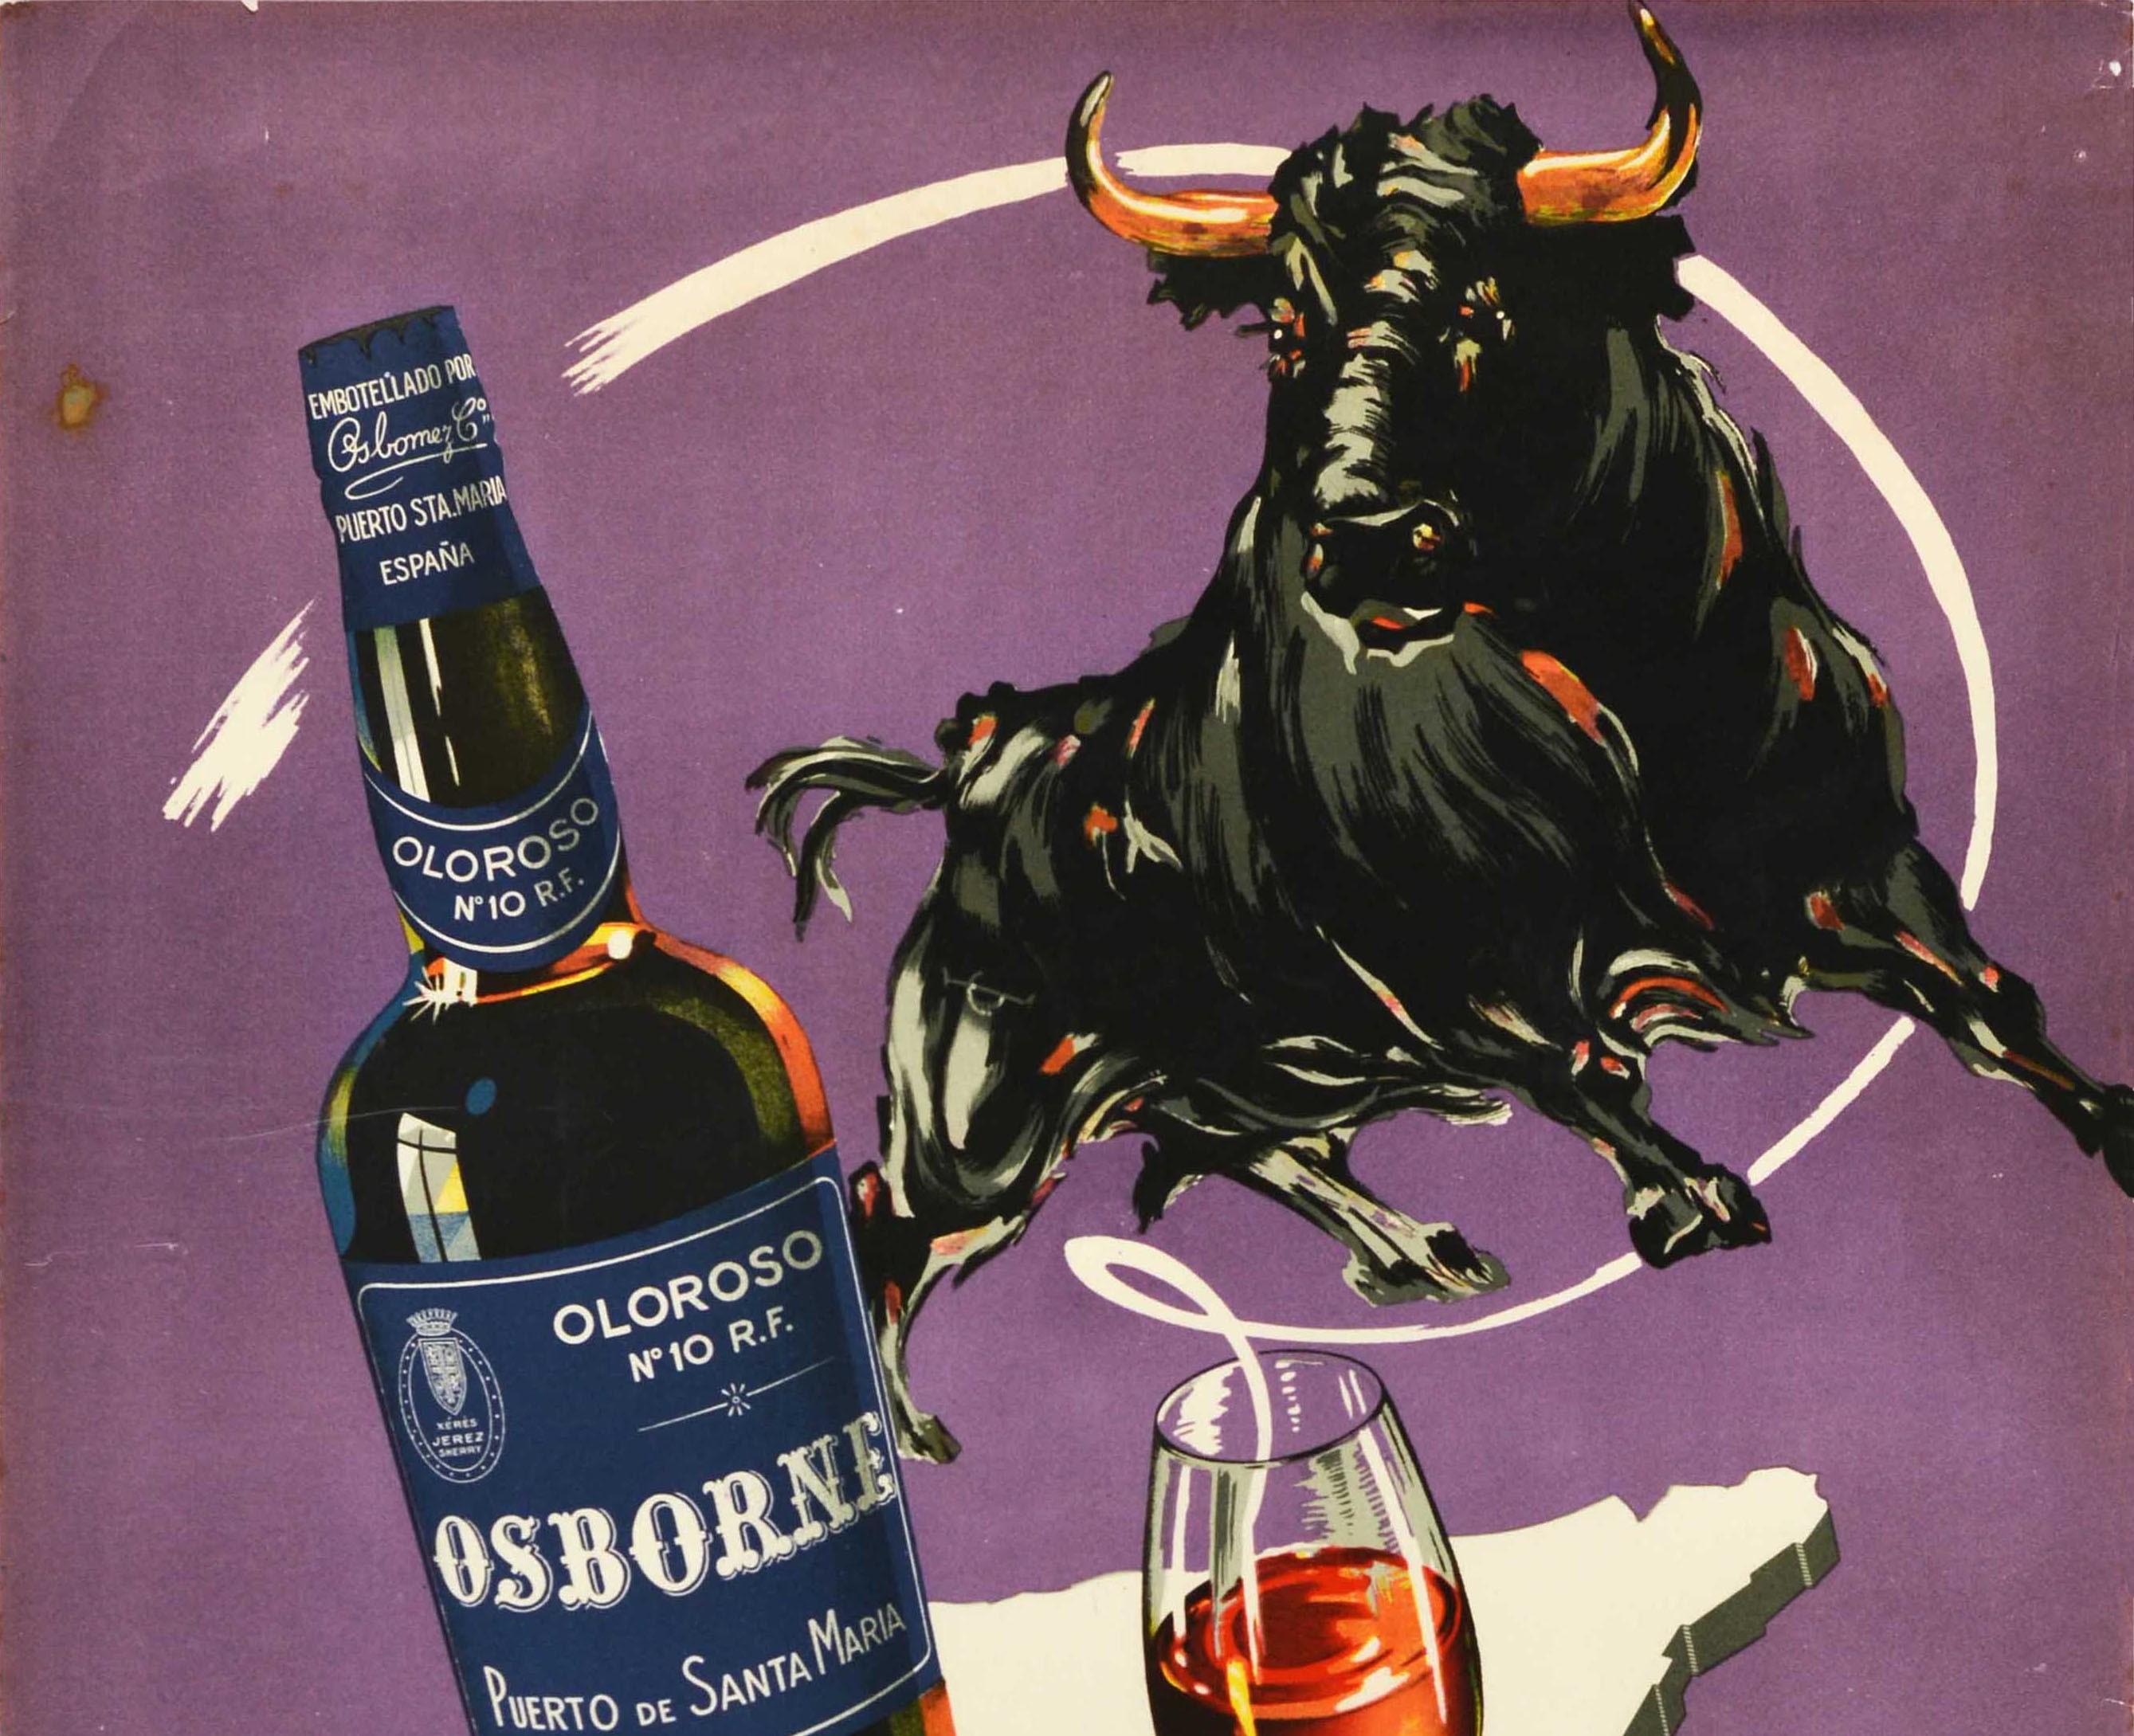 Affiche publicitaire originale et vintage pour la boisson Oloroso No.10 R.F. Osborne Sherry / Xeres / Jerez Puerto de Santa Maria Espana, avec un grand dessin représentant un taureau au-dessus d'une bouteille de vin de xérès fabriqué à partir de